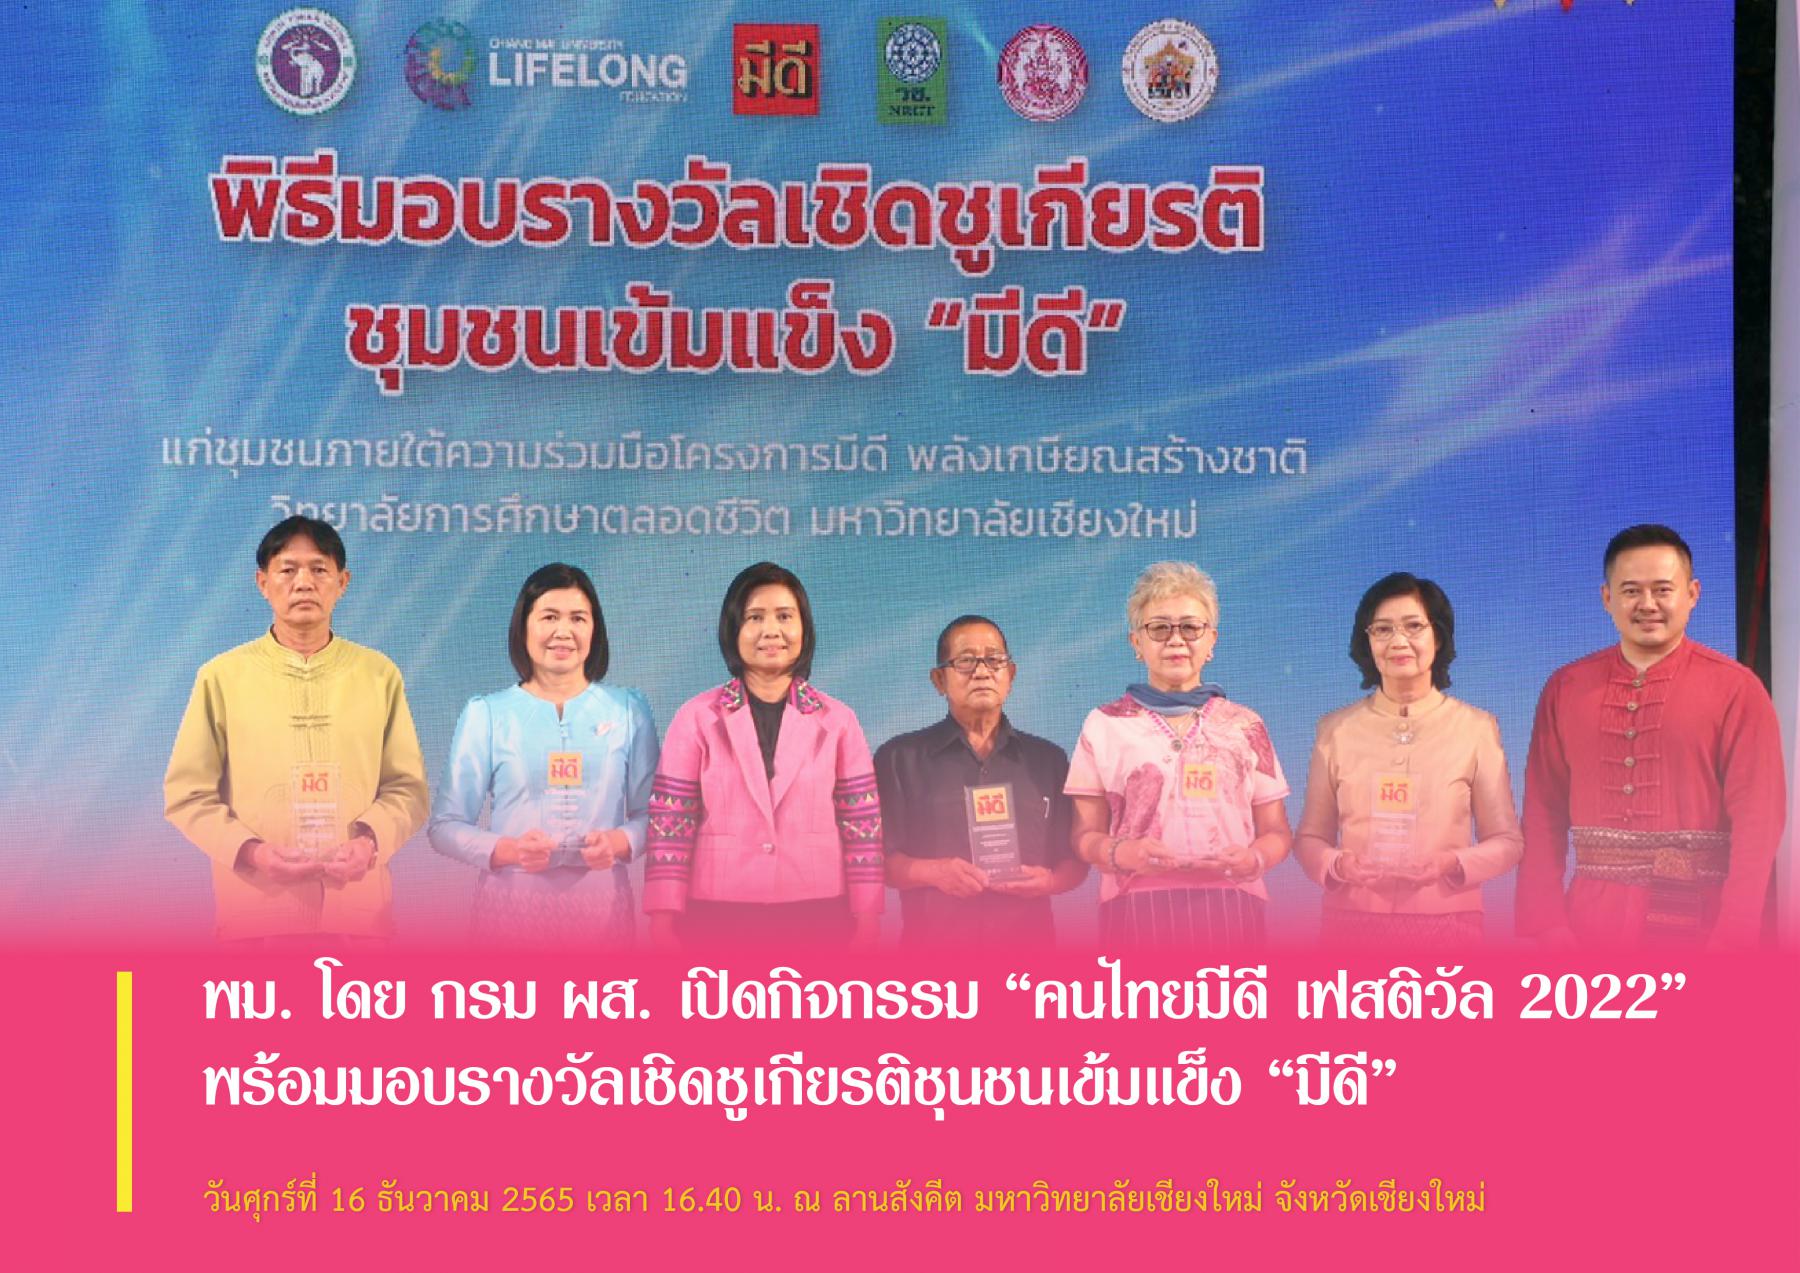 พม. โดย กรม ผส. เปิดกิจกรรม “คนไทยมีดี เฟสติวัล 2022” พร้อมมอบรางวัลเชิดชูเกียรติชุนชนเข้มแข็ง “มีดี”